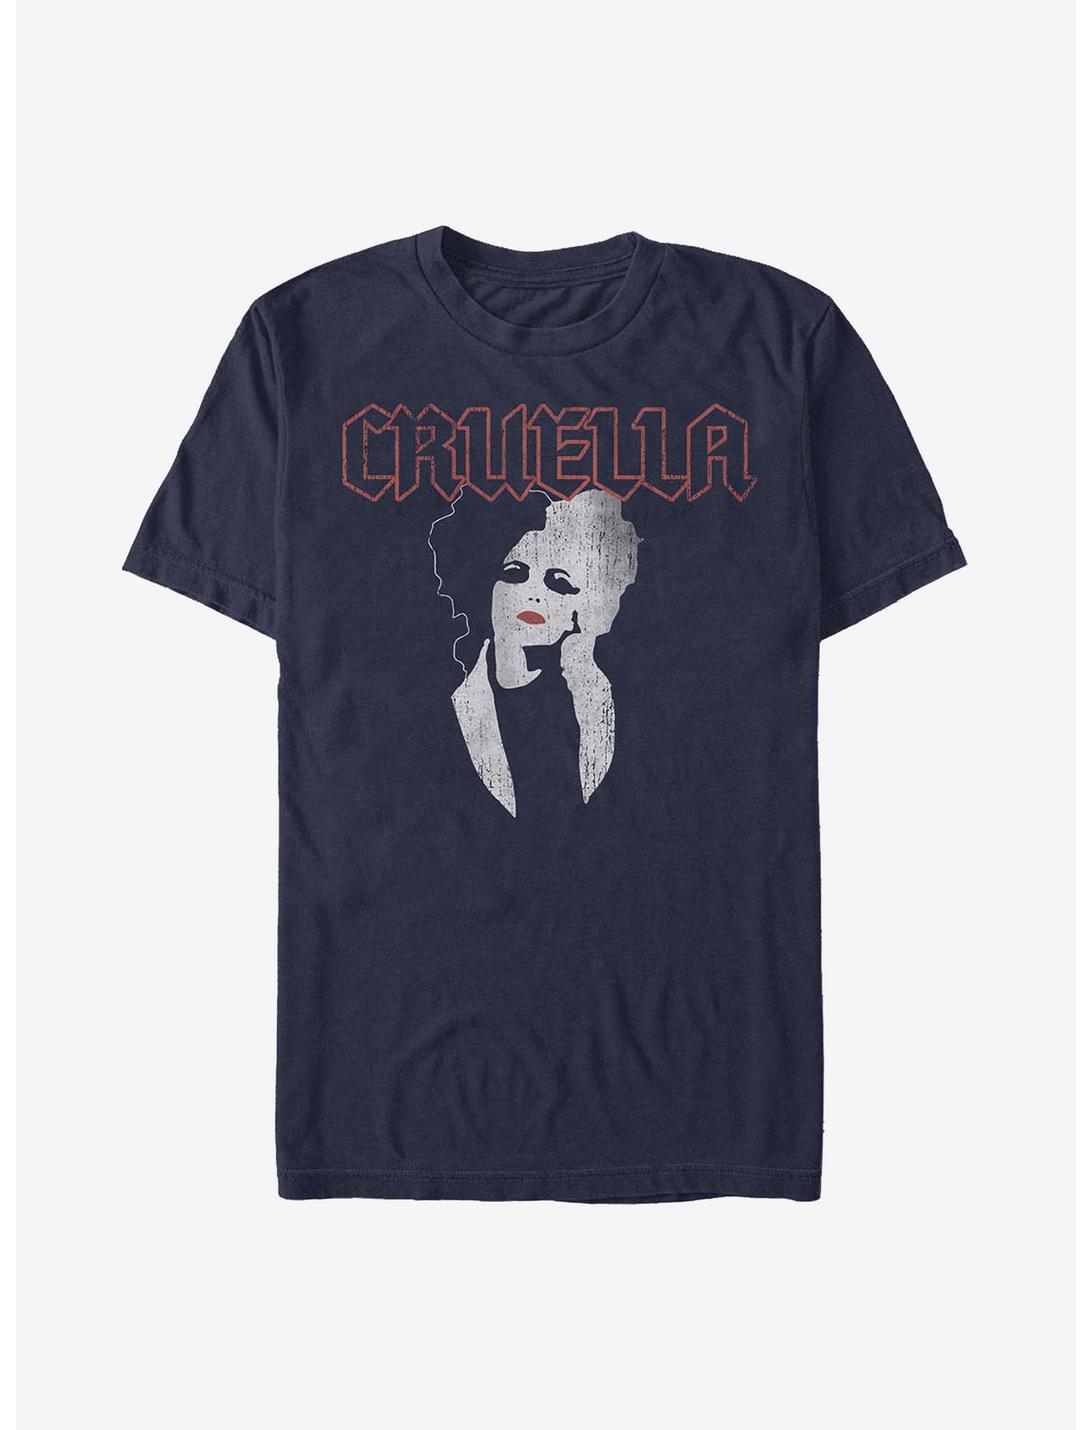 Disney Cruella Rock Style T-Shirt, NAVY, hi-res